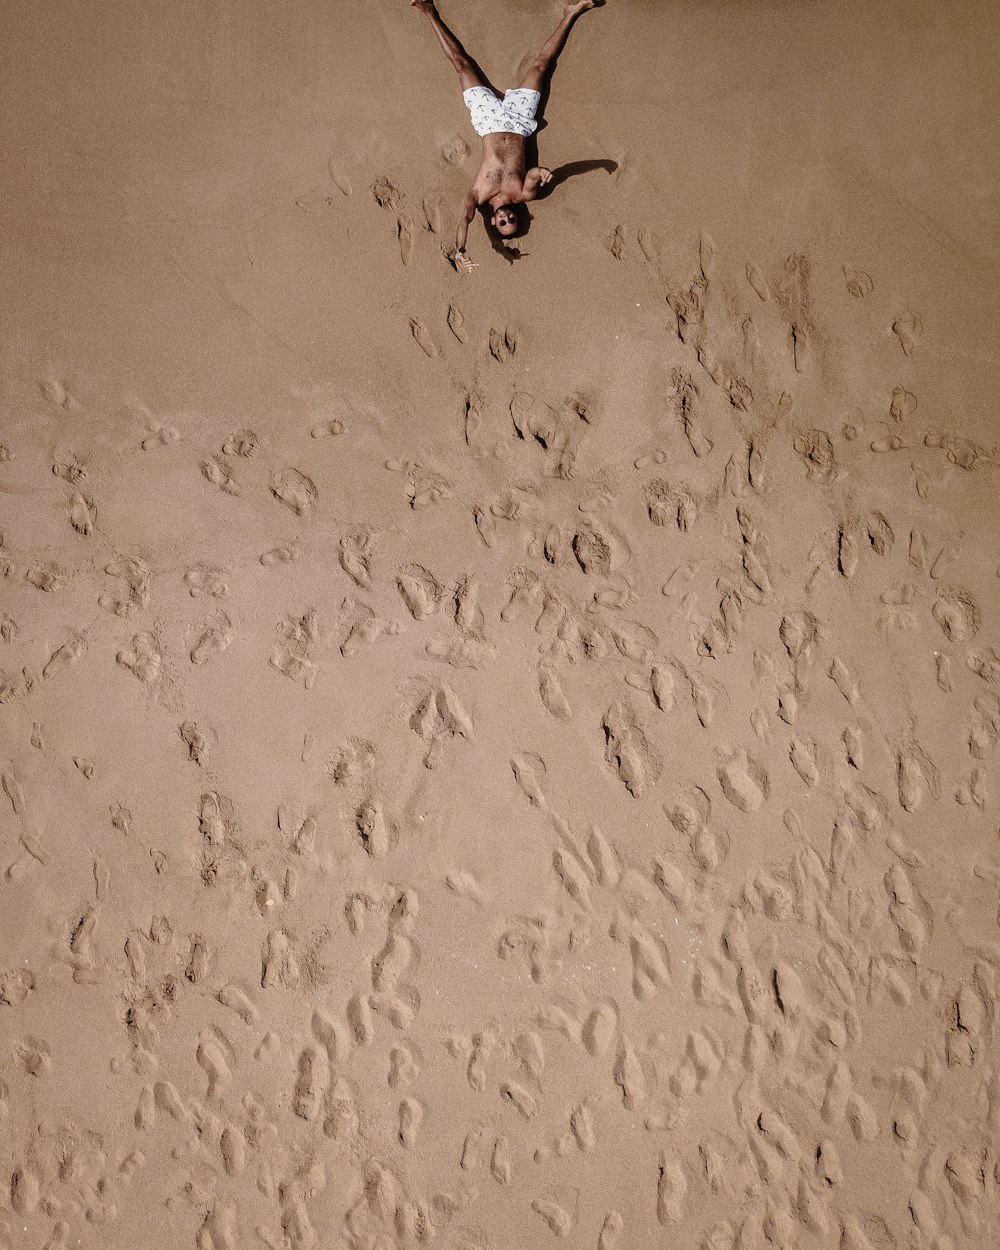 Una persona parada en medio de una playa de arena